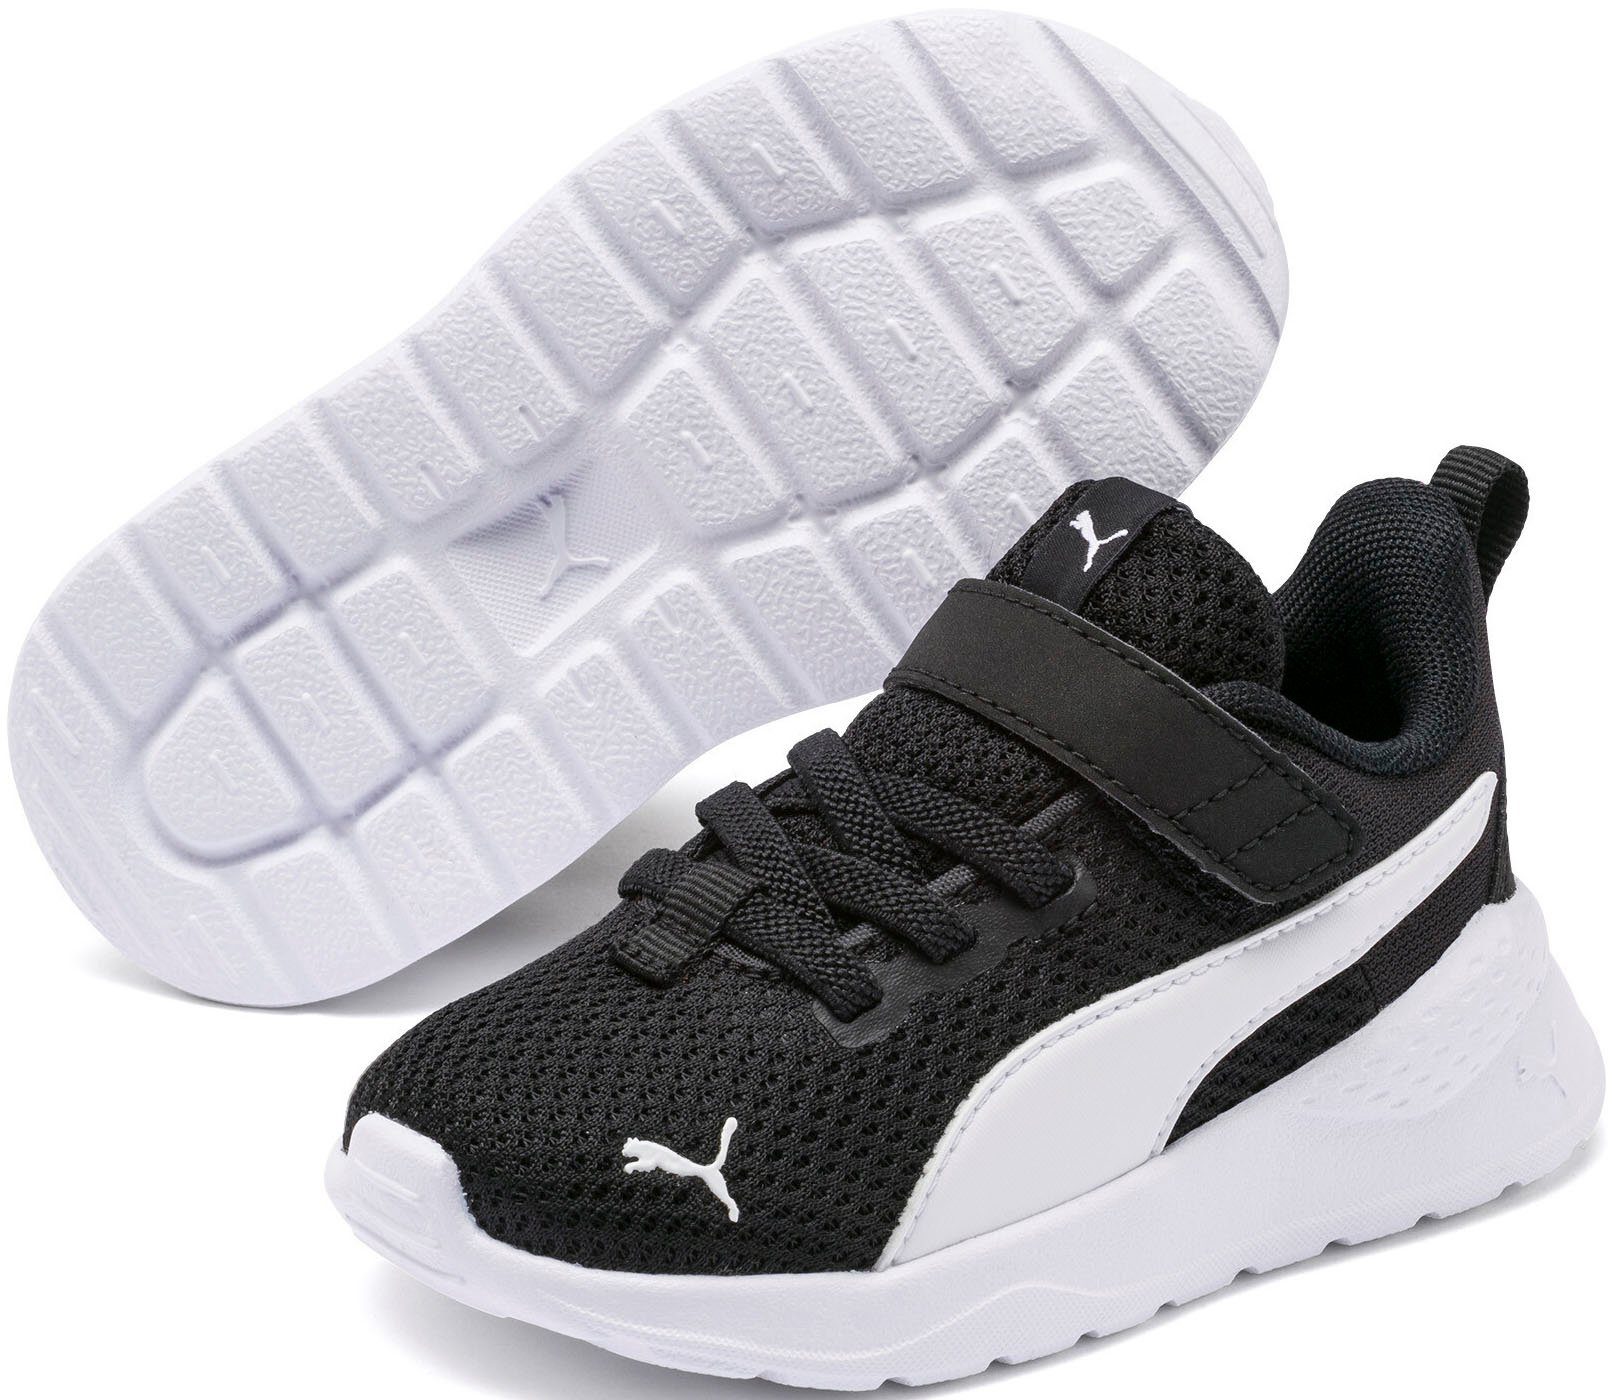 PUMA ANZARUN LITE AC INF Puma White Black-Puma Sneaker